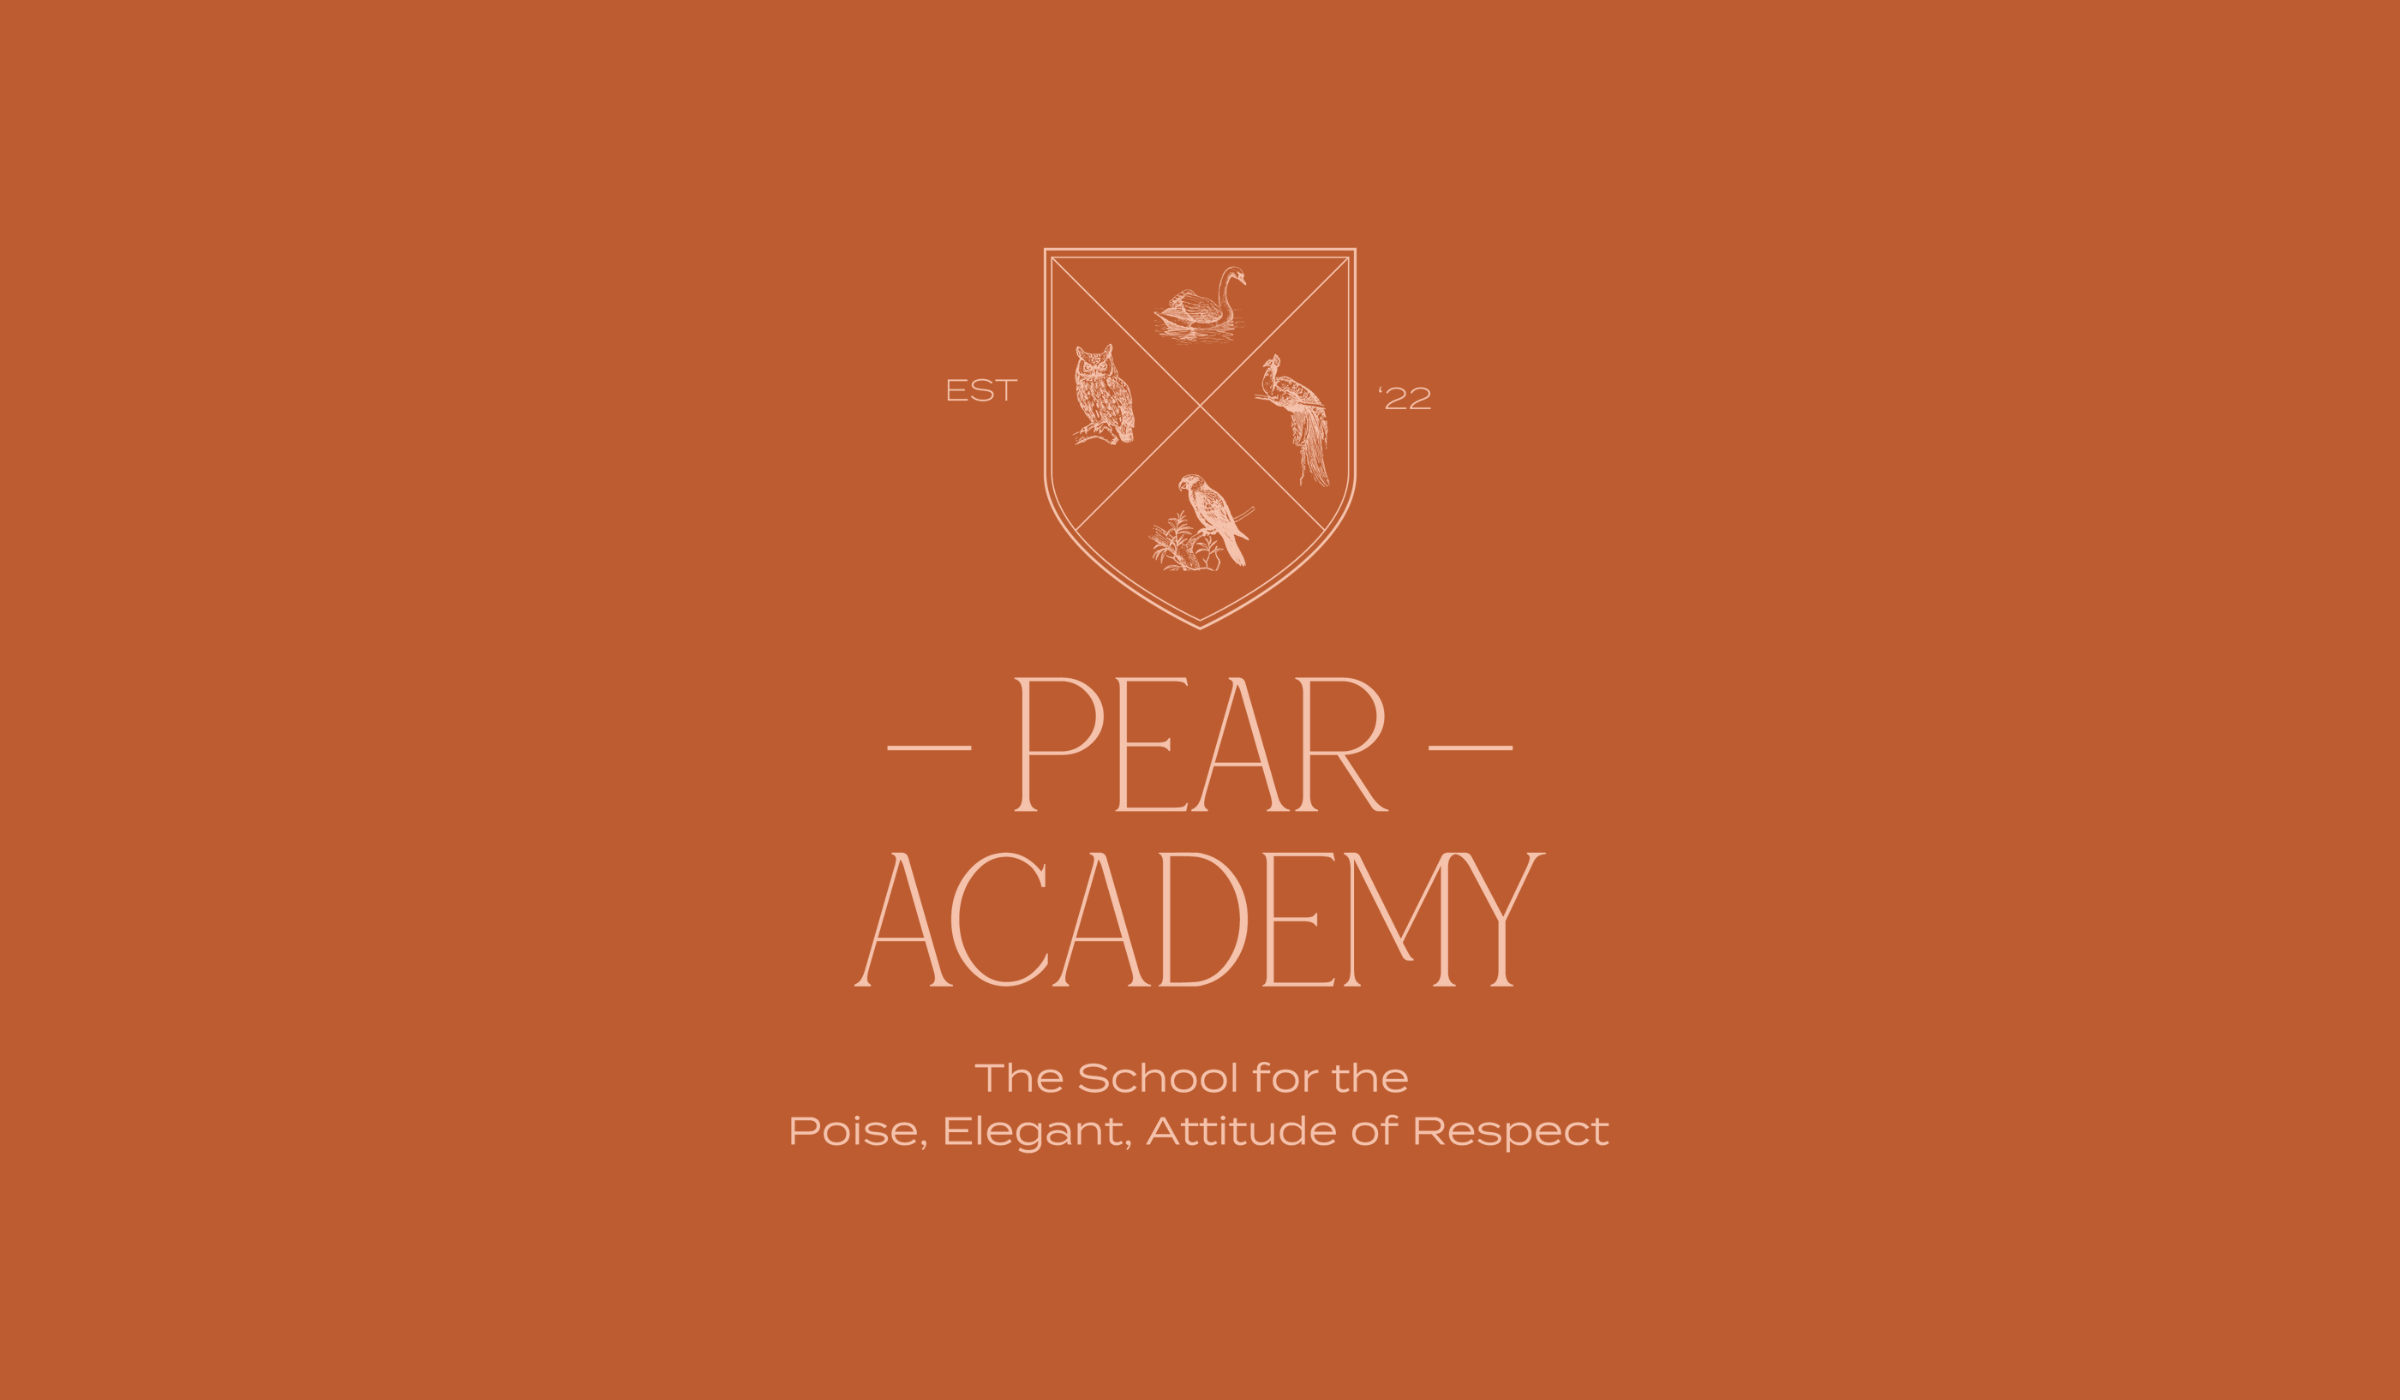 PEAR Academy